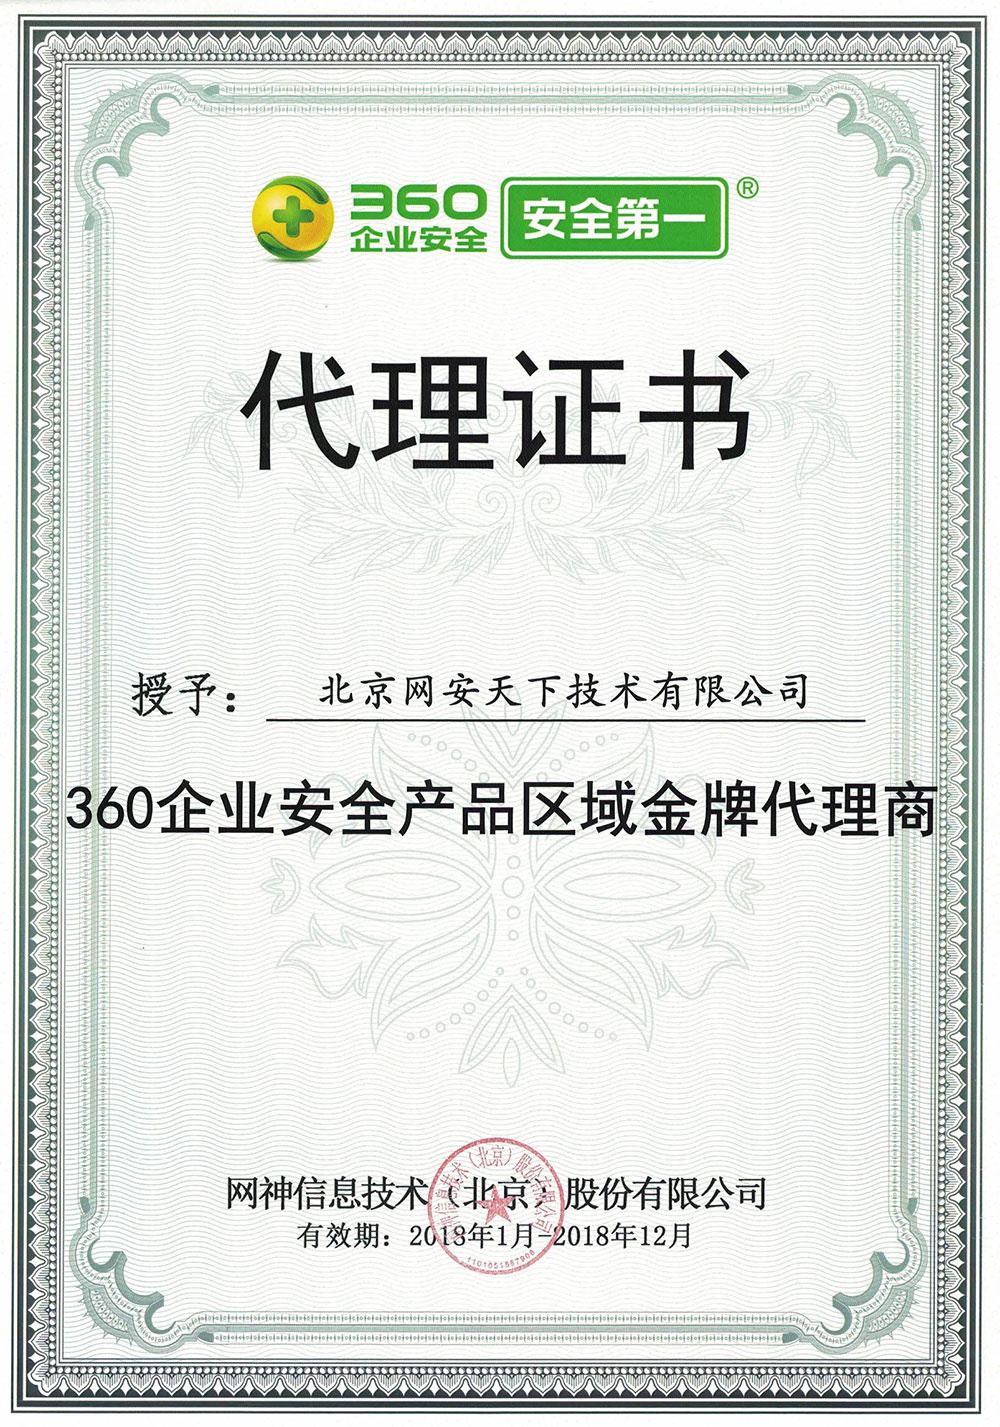 網安天下(xià)簽約2018年度360企業安全代理(lǐ)商